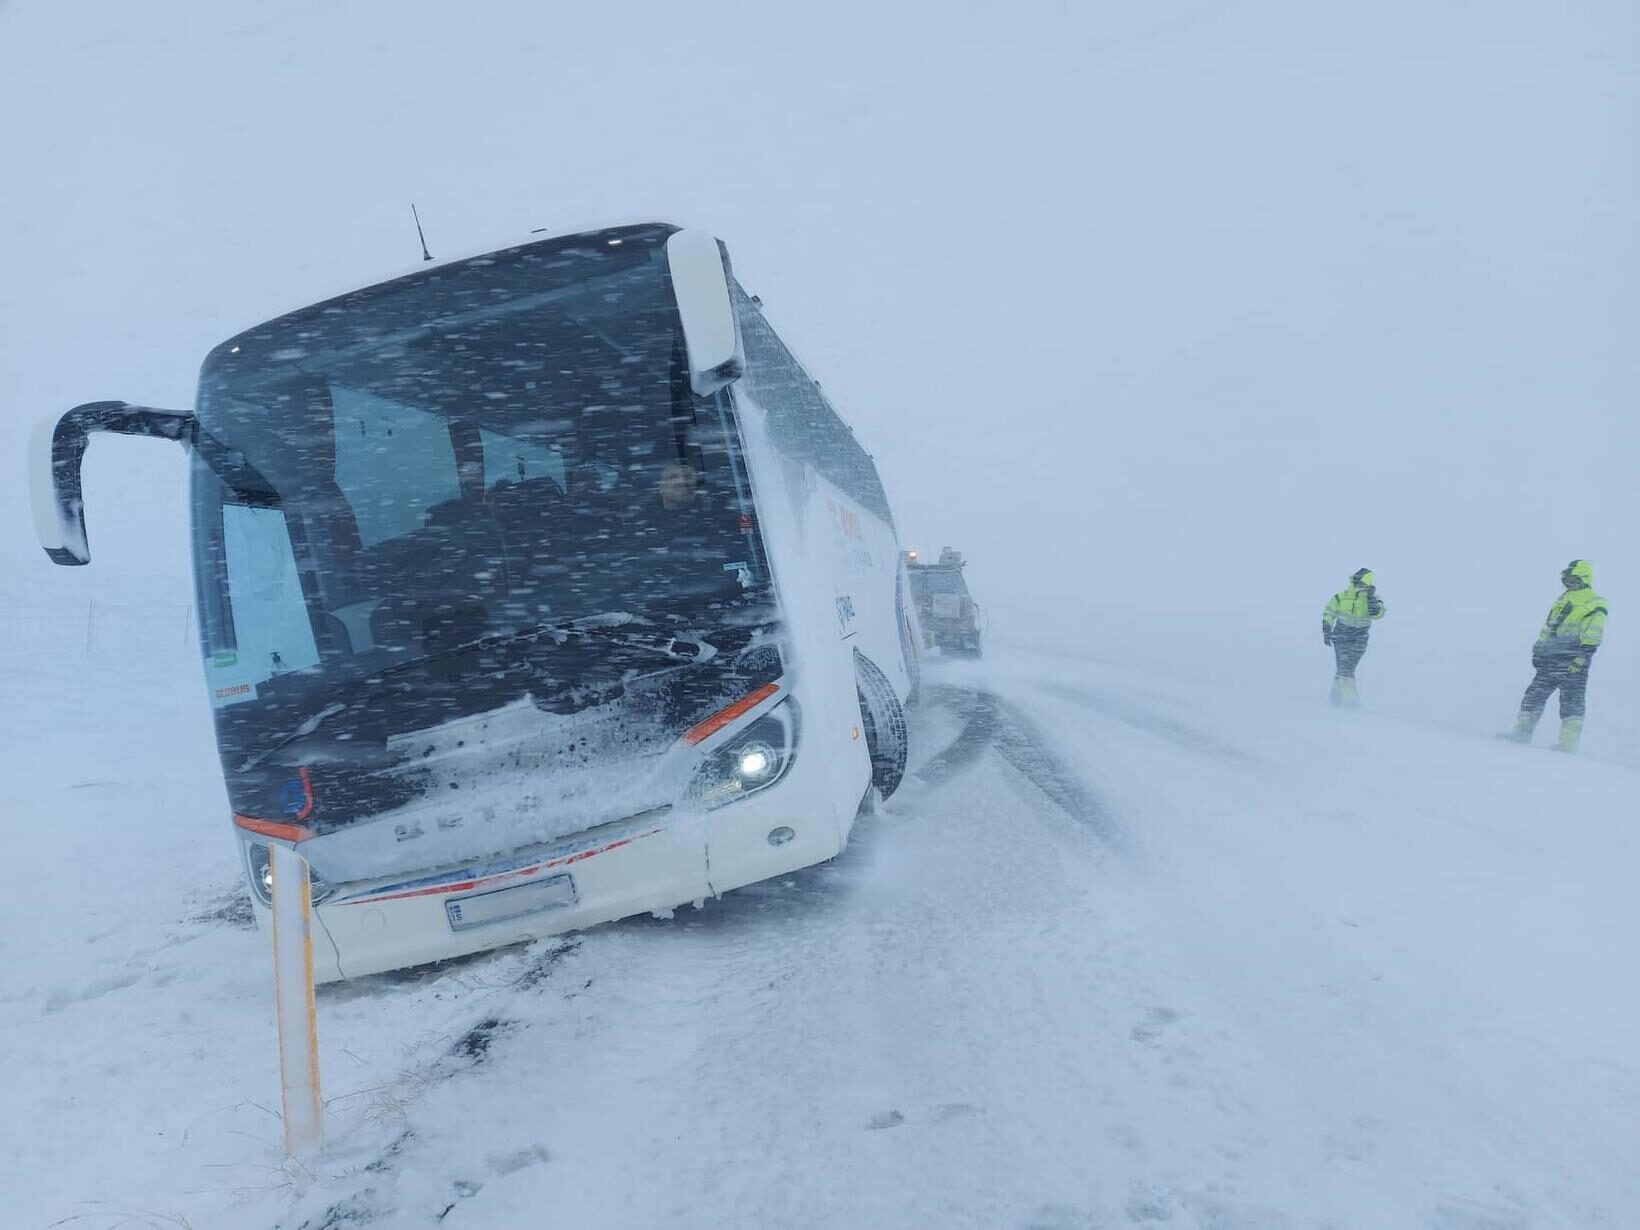 A bus was blown off the road in Hrútafjörður.